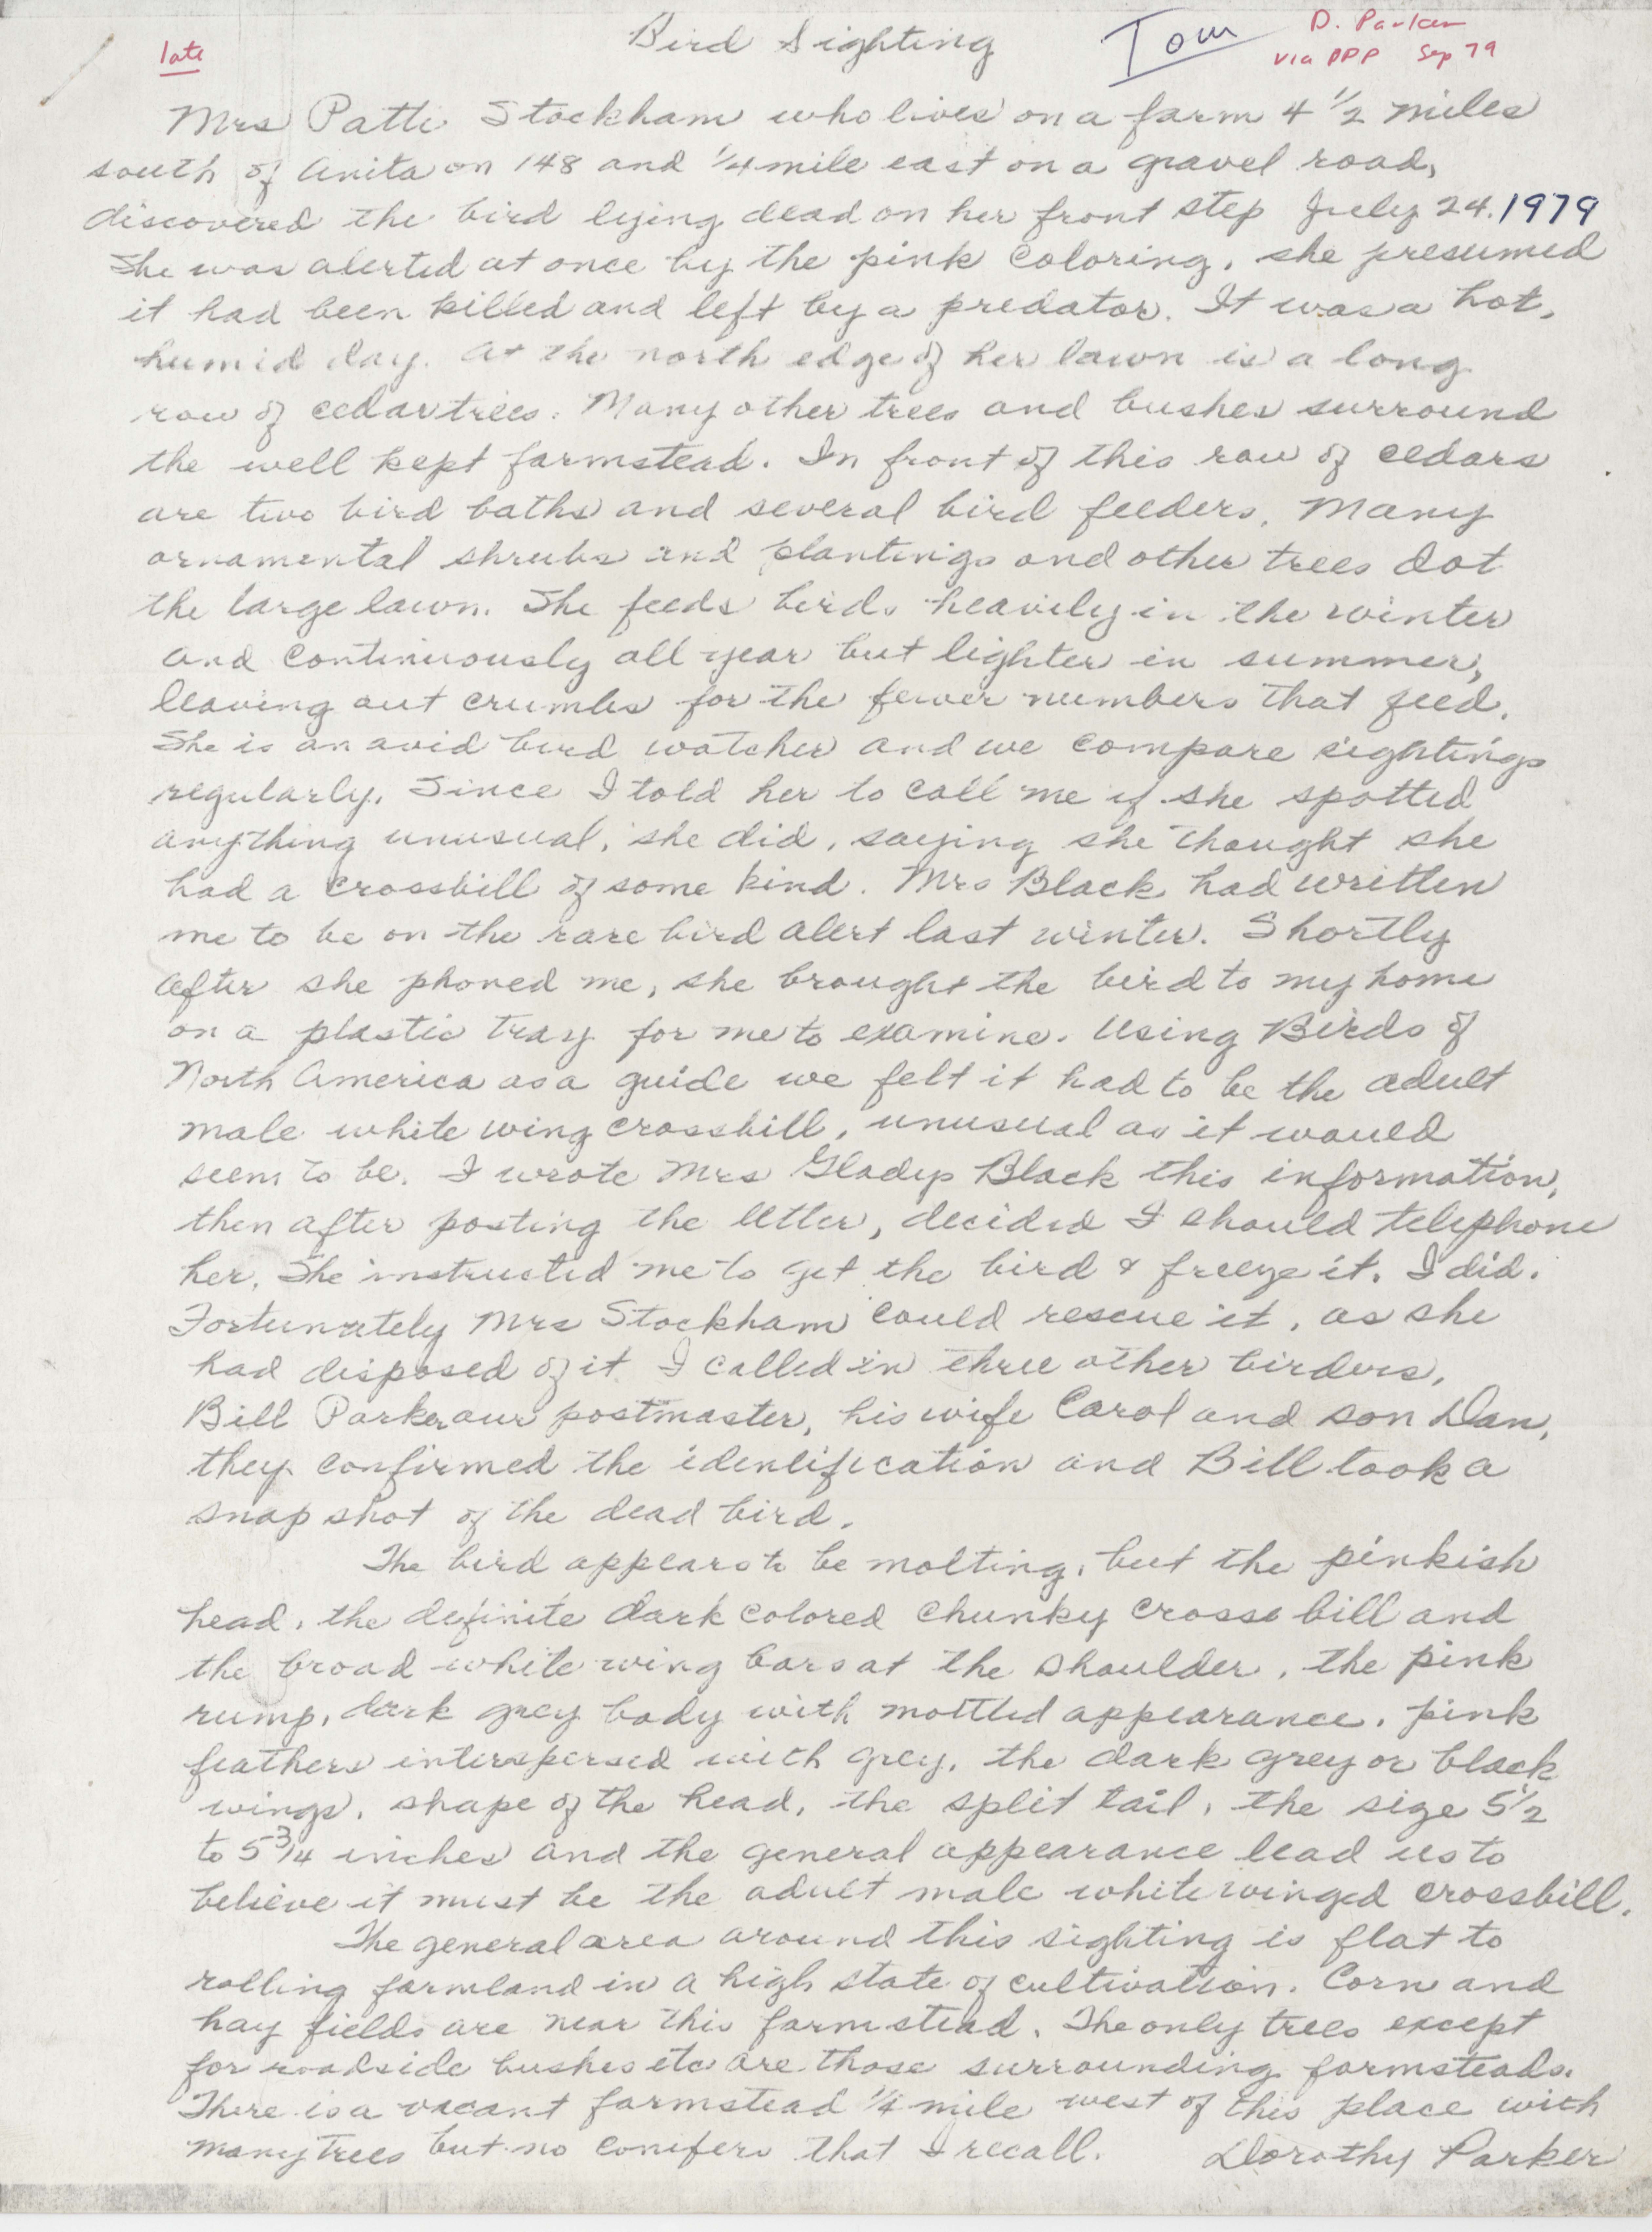 Dorothy Parker's letter regarding bird sighting, July 24, 1979